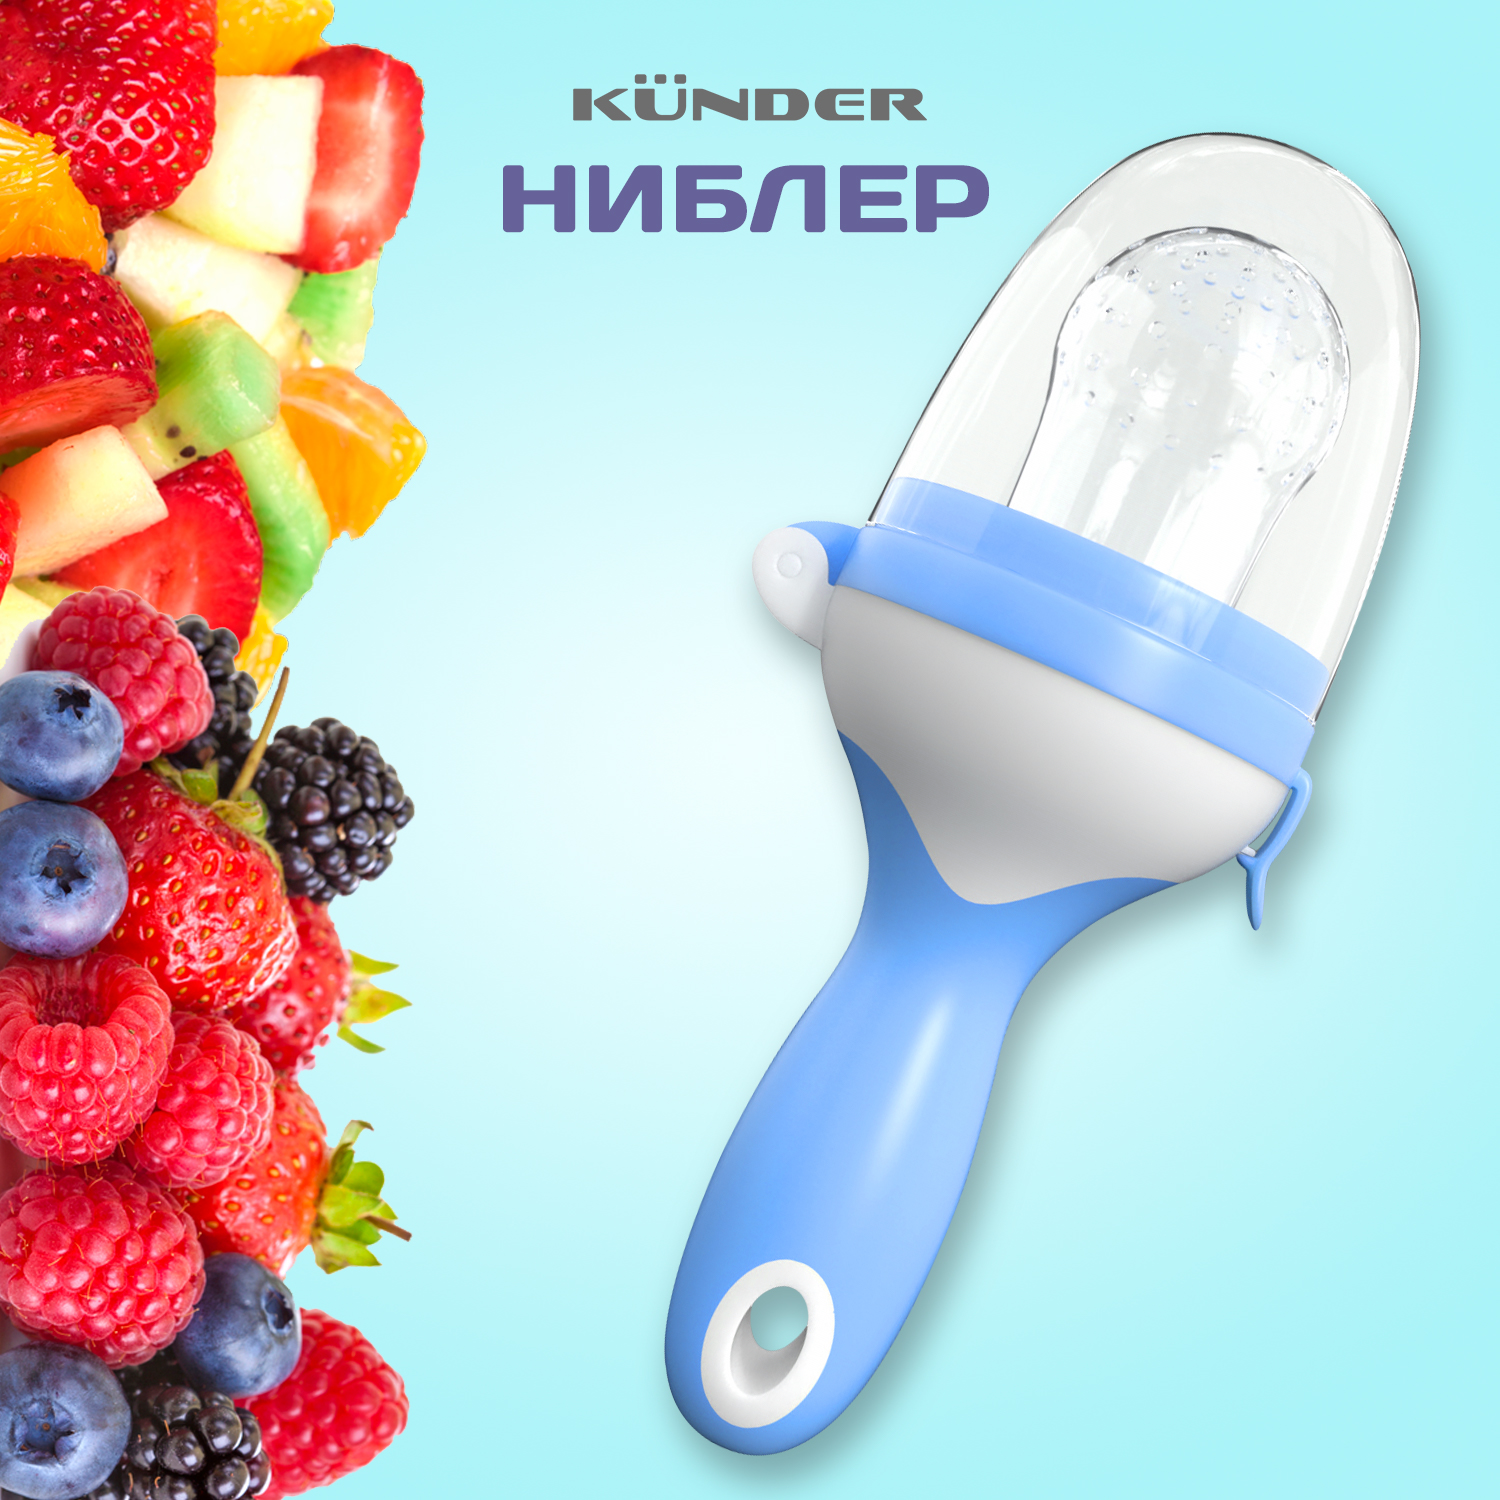 Ниблер для прикорма Kunder с силиконовой сеточкой, для фруктов и ягод, голубой